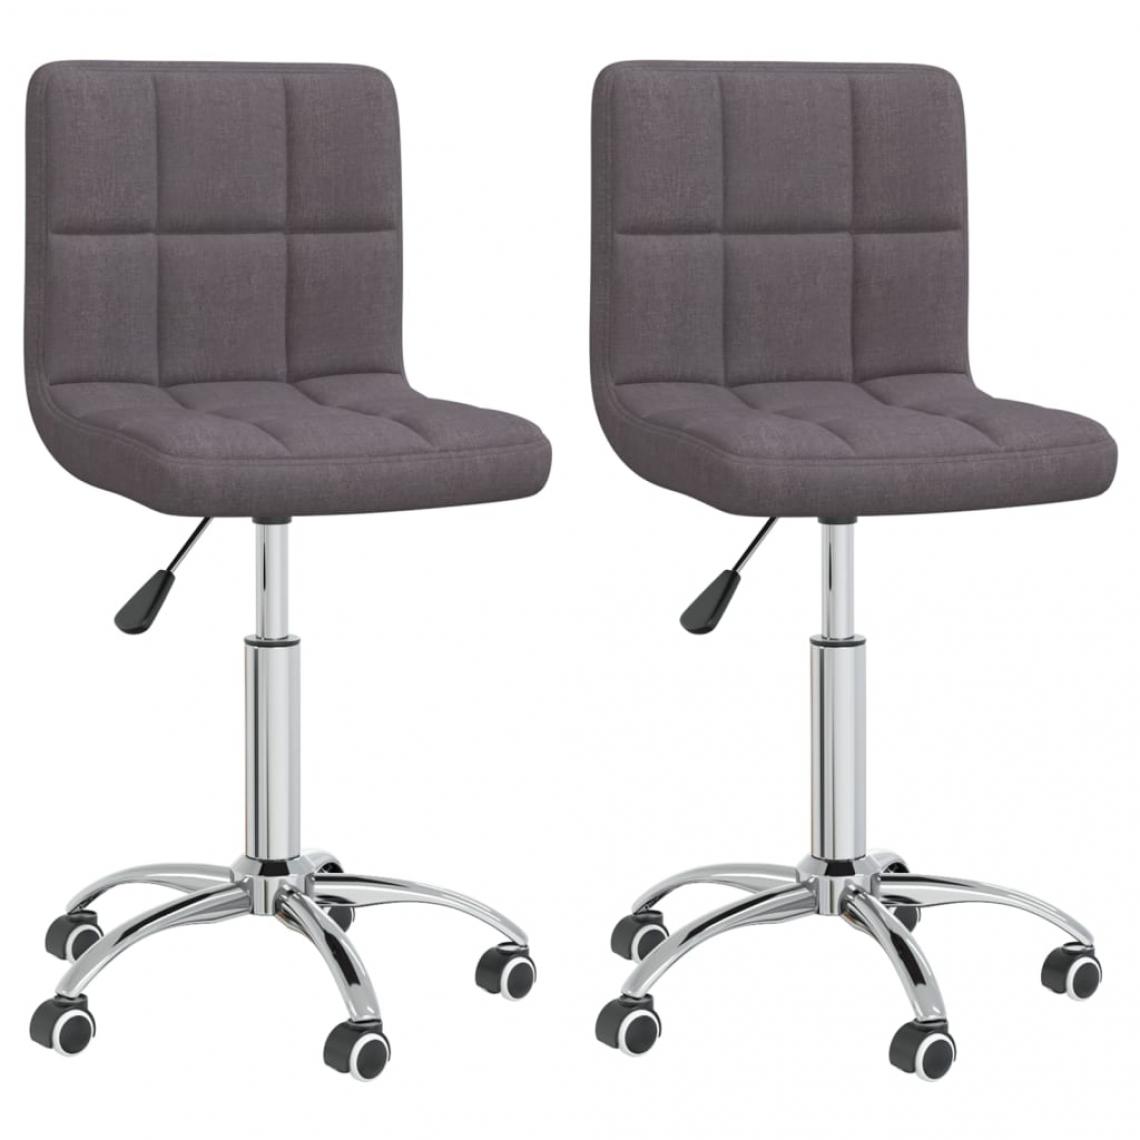 Decoshop26 - Lot de 2 chaises de salle à manger cuisine design moderne tissu taupe CDS021041 - Chaises